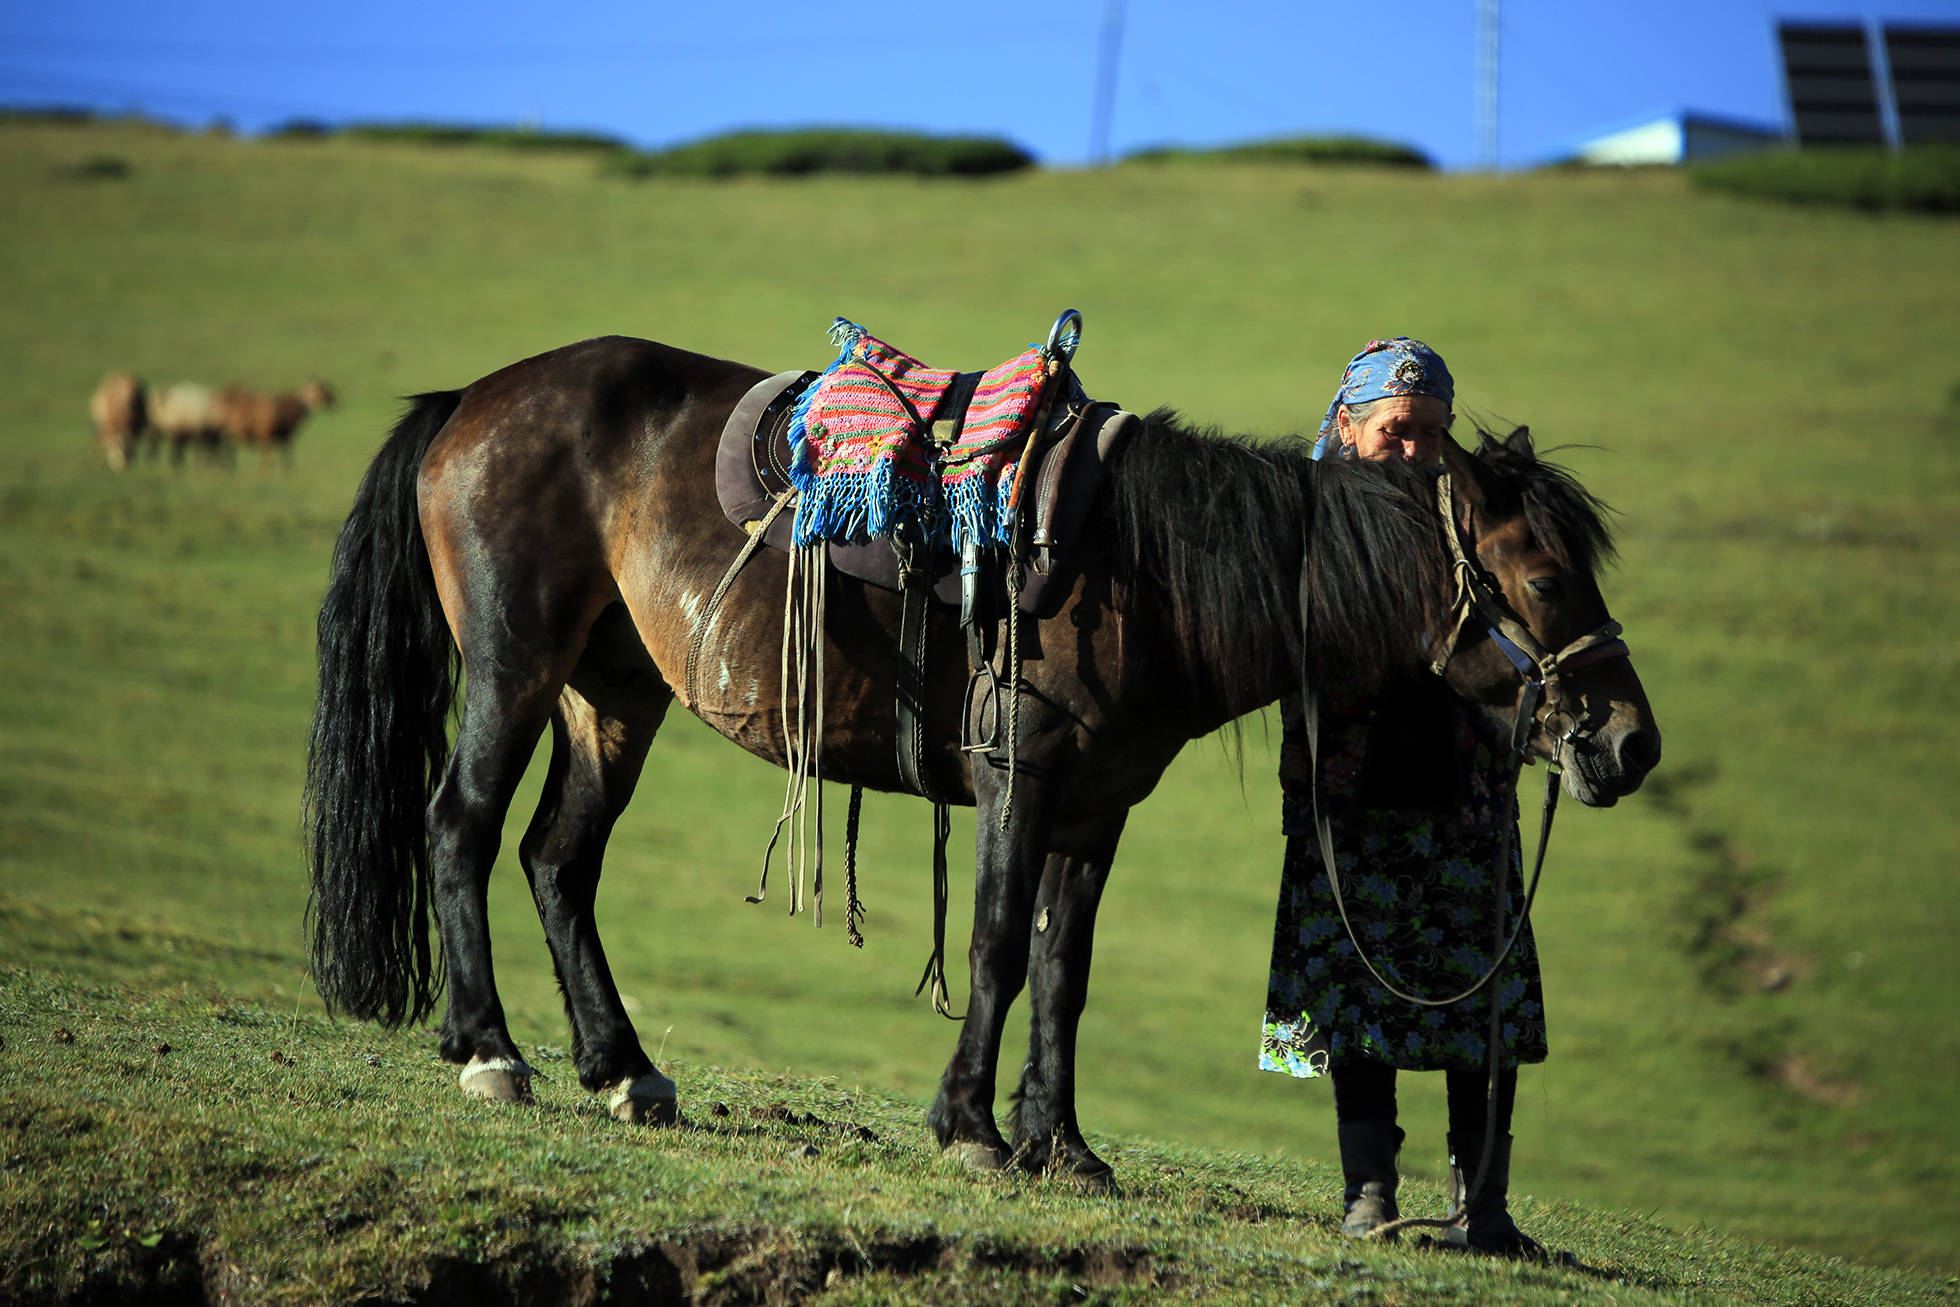 【蒙古影像】带你了解蒙古人的游牧生活-草原元素---蒙古元素 Mongolia Elements